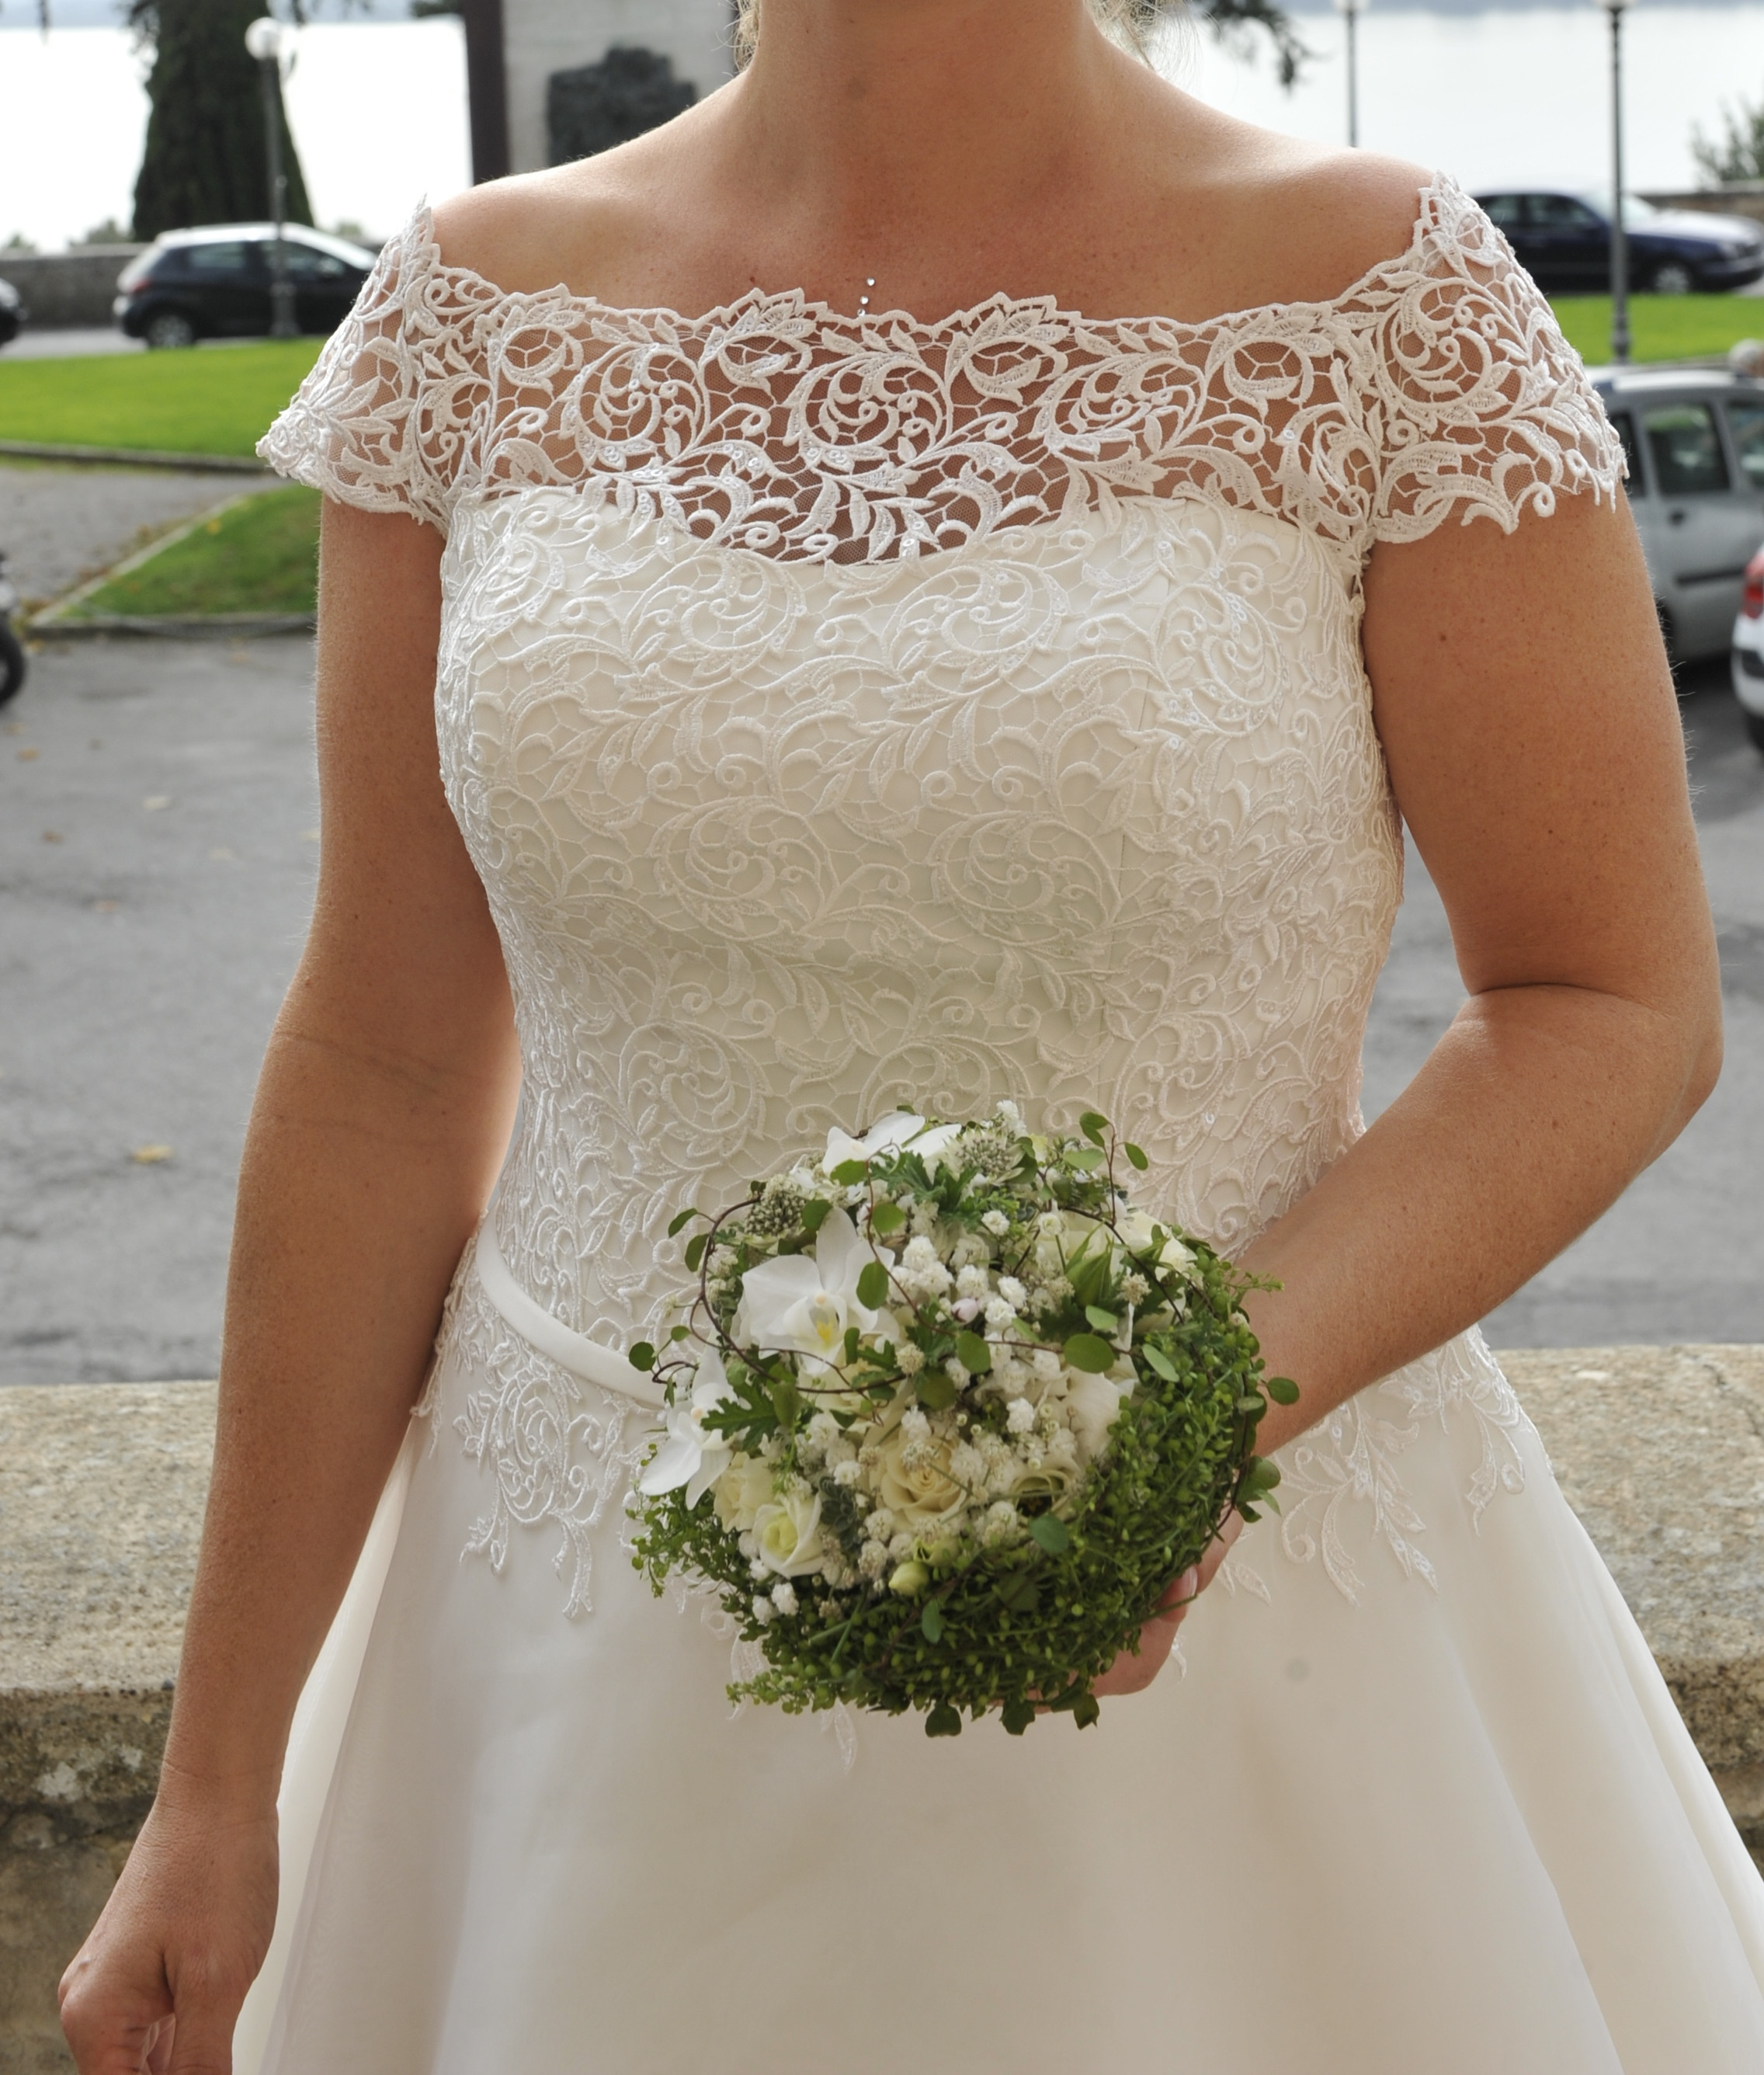 Hochzeitskleid Ankauf
 Brautkleid ankauf vorarlberg – Dein neuer Kleiderfotoblog